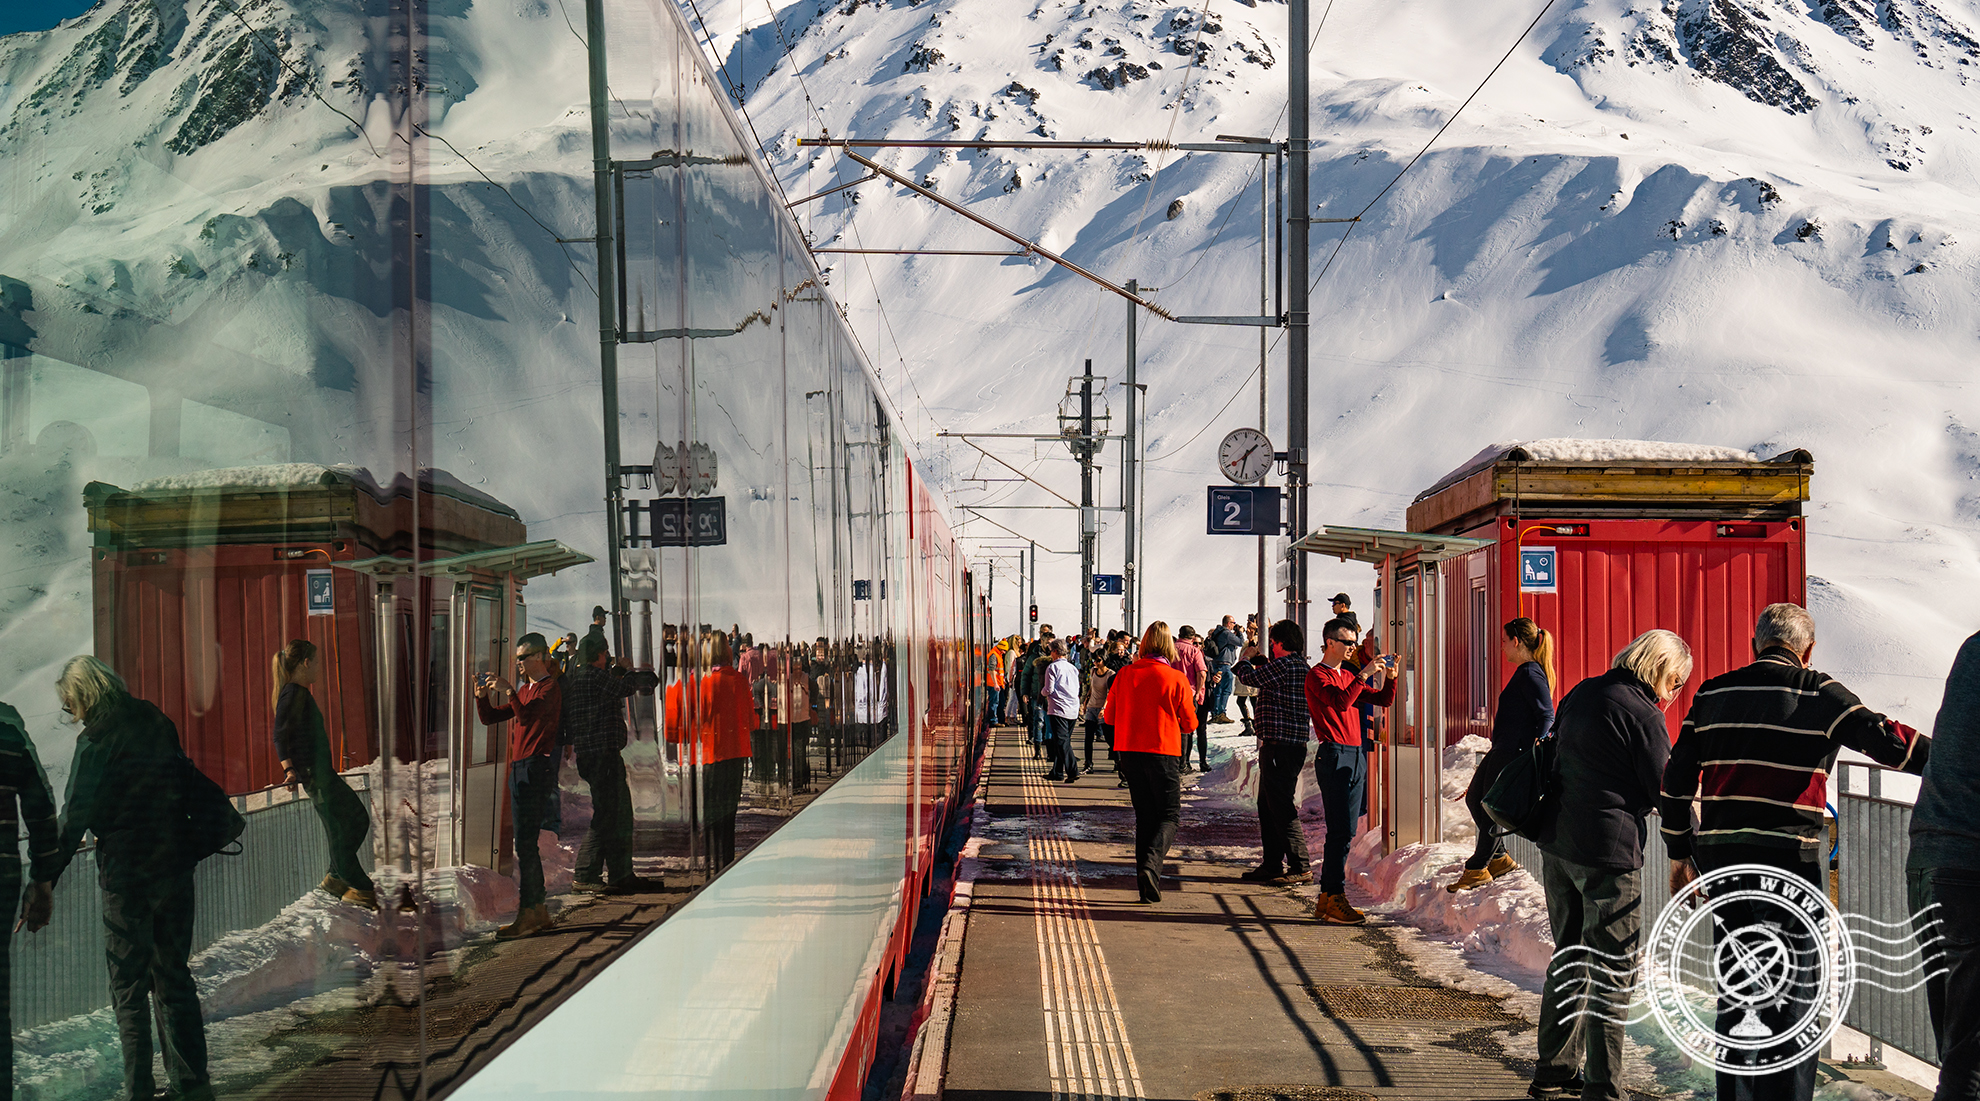 Glacier Express stop in Andermatt